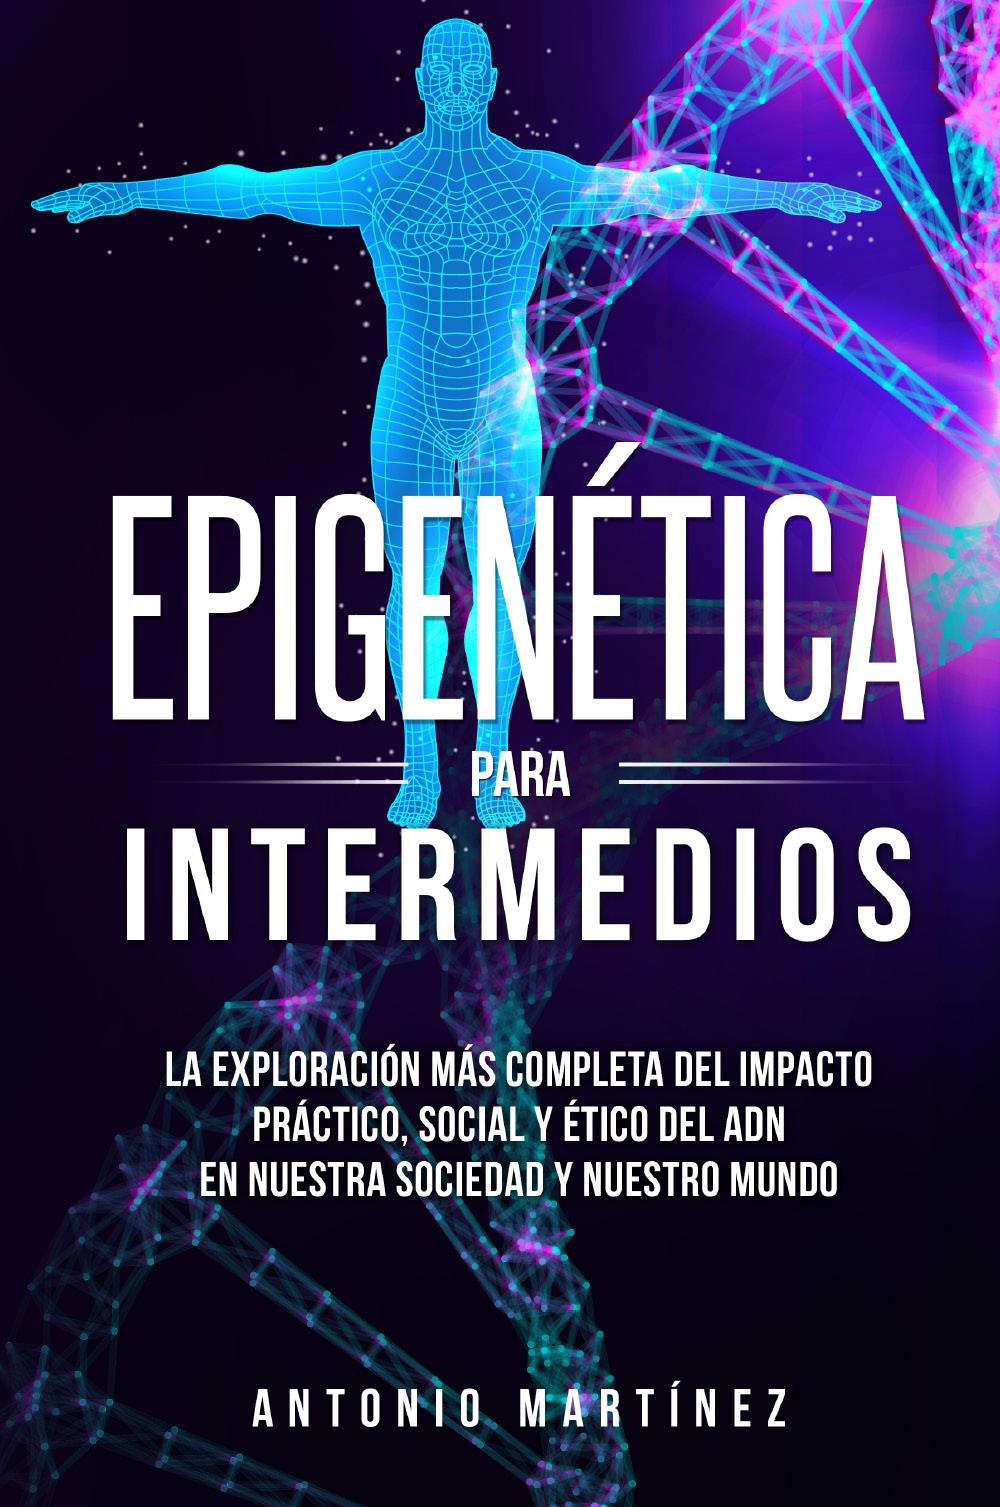 Epigenética para intermedios. La exploración más completa del impacto práctico, social y ético del ADN en nuestra sociedad y nuestro mundo